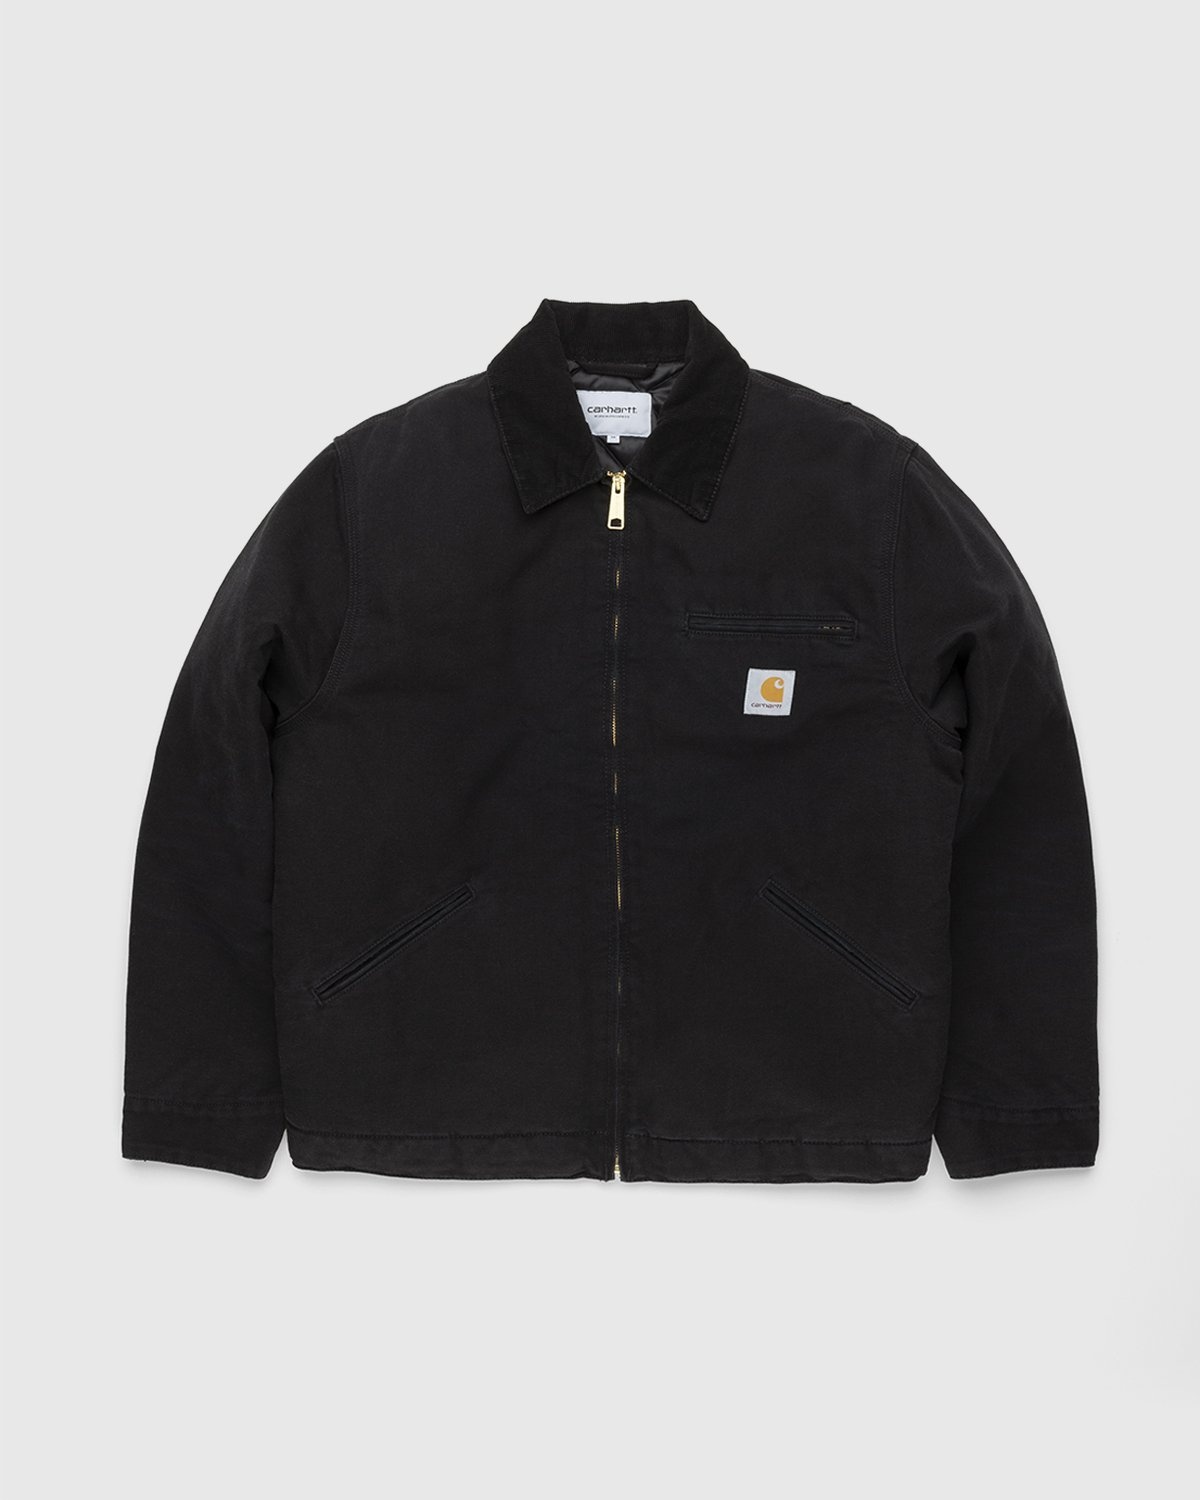 Carhartt WIP – OG Detroit Jacket Black - Outerwear - Black - Image 1